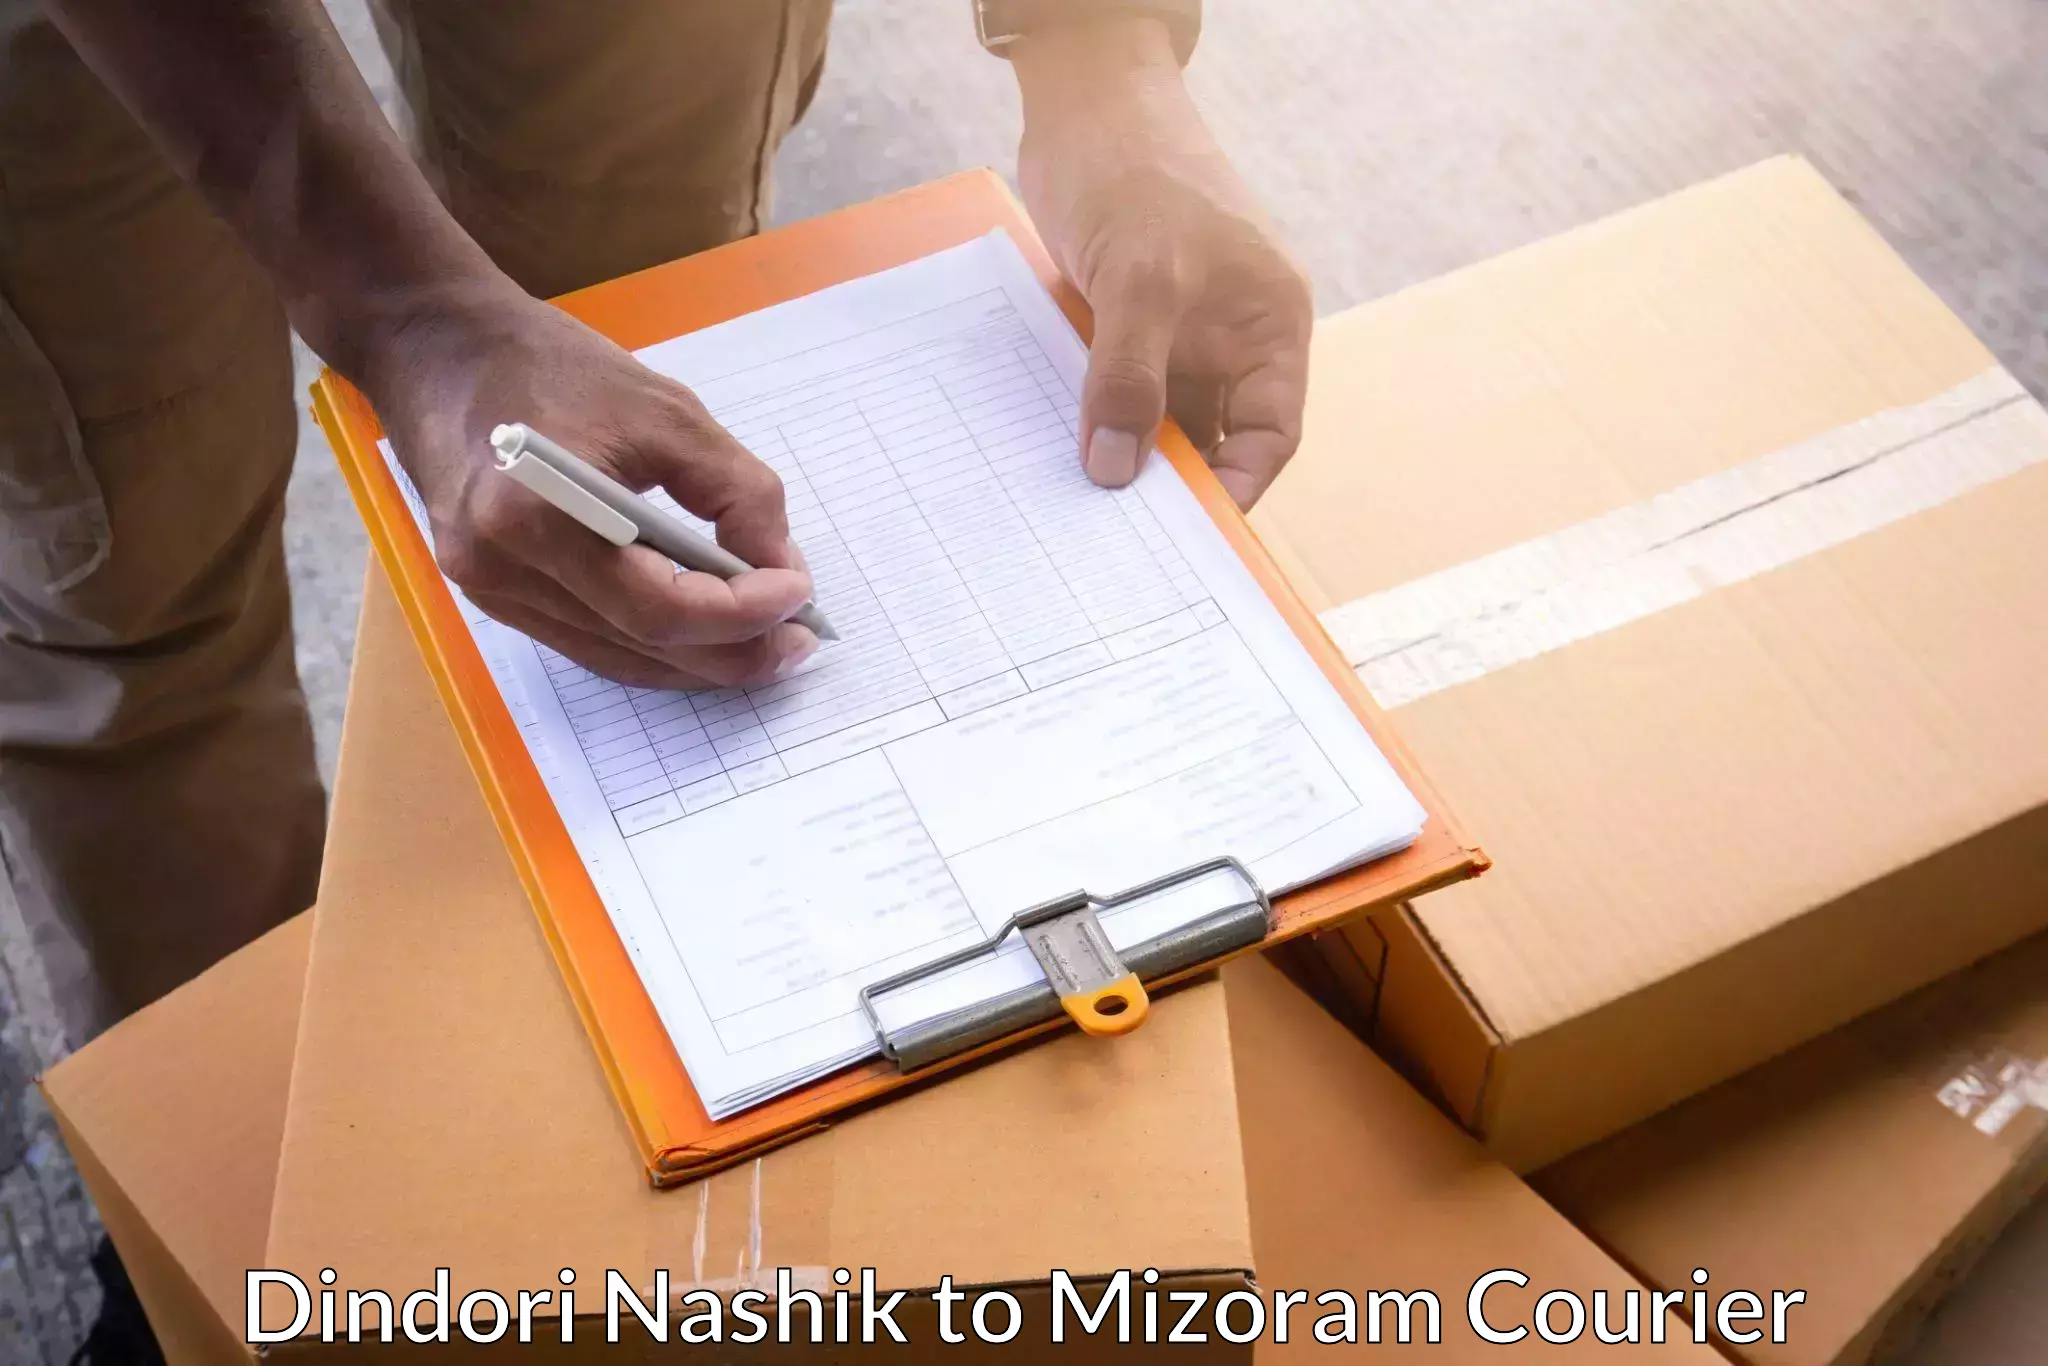 Large package courier Dindori Nashik to Thenzawl